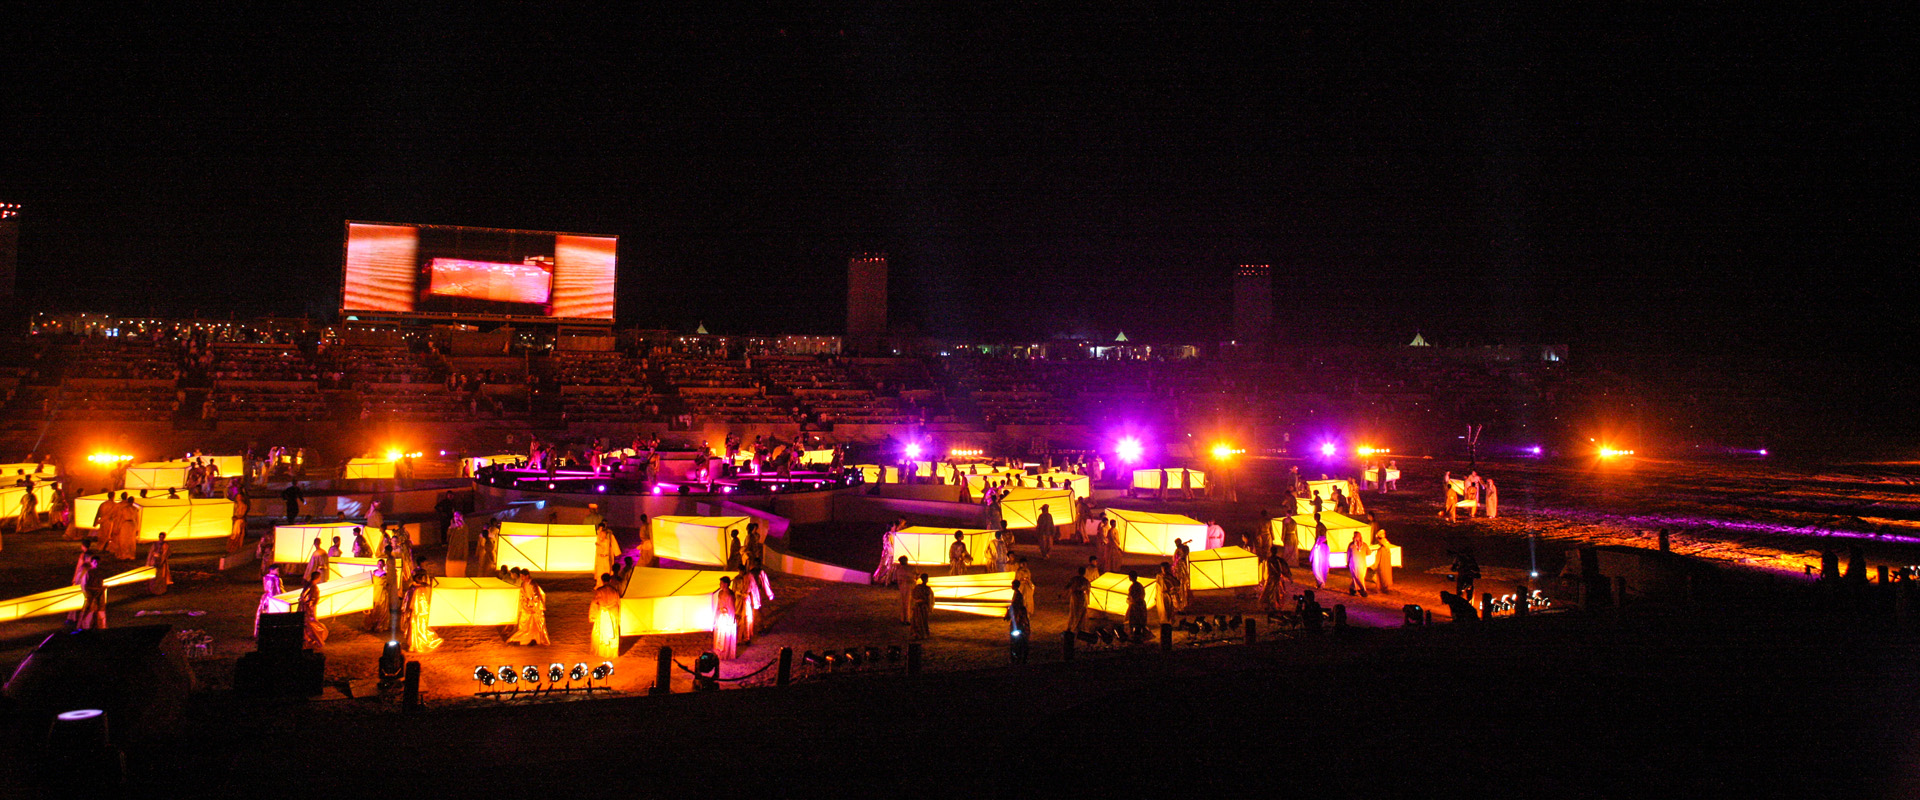 位于迪拜郊外之沙漠地带, 此椭圆形状的露天看台活动场长约420公尺,宽约250公尺是特别为迪拜特有的年度迪拜世界杯活动之一“阿拉伯之夜”而特地开设的